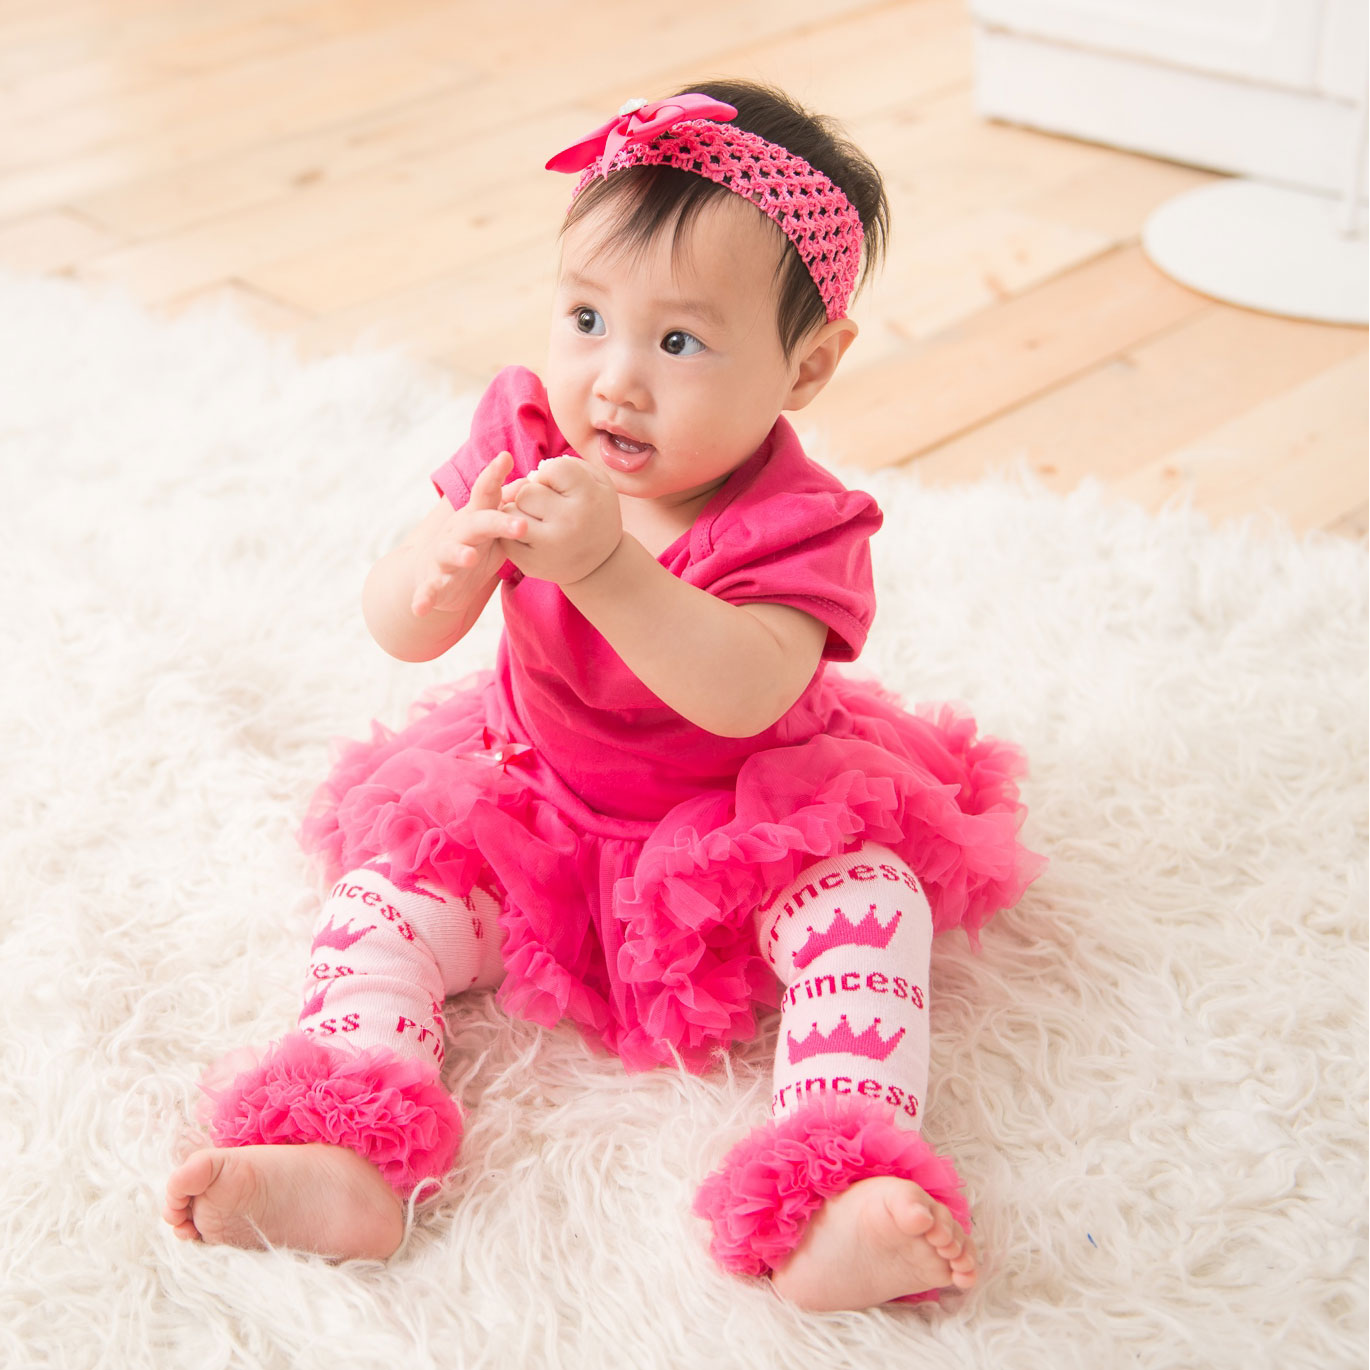 日安朵朵 女嬰雪紡蓬蓬裙連身衣禮盒 - 桃紅芭比(衣+圍兜+寶寶襪) (6-12個月)